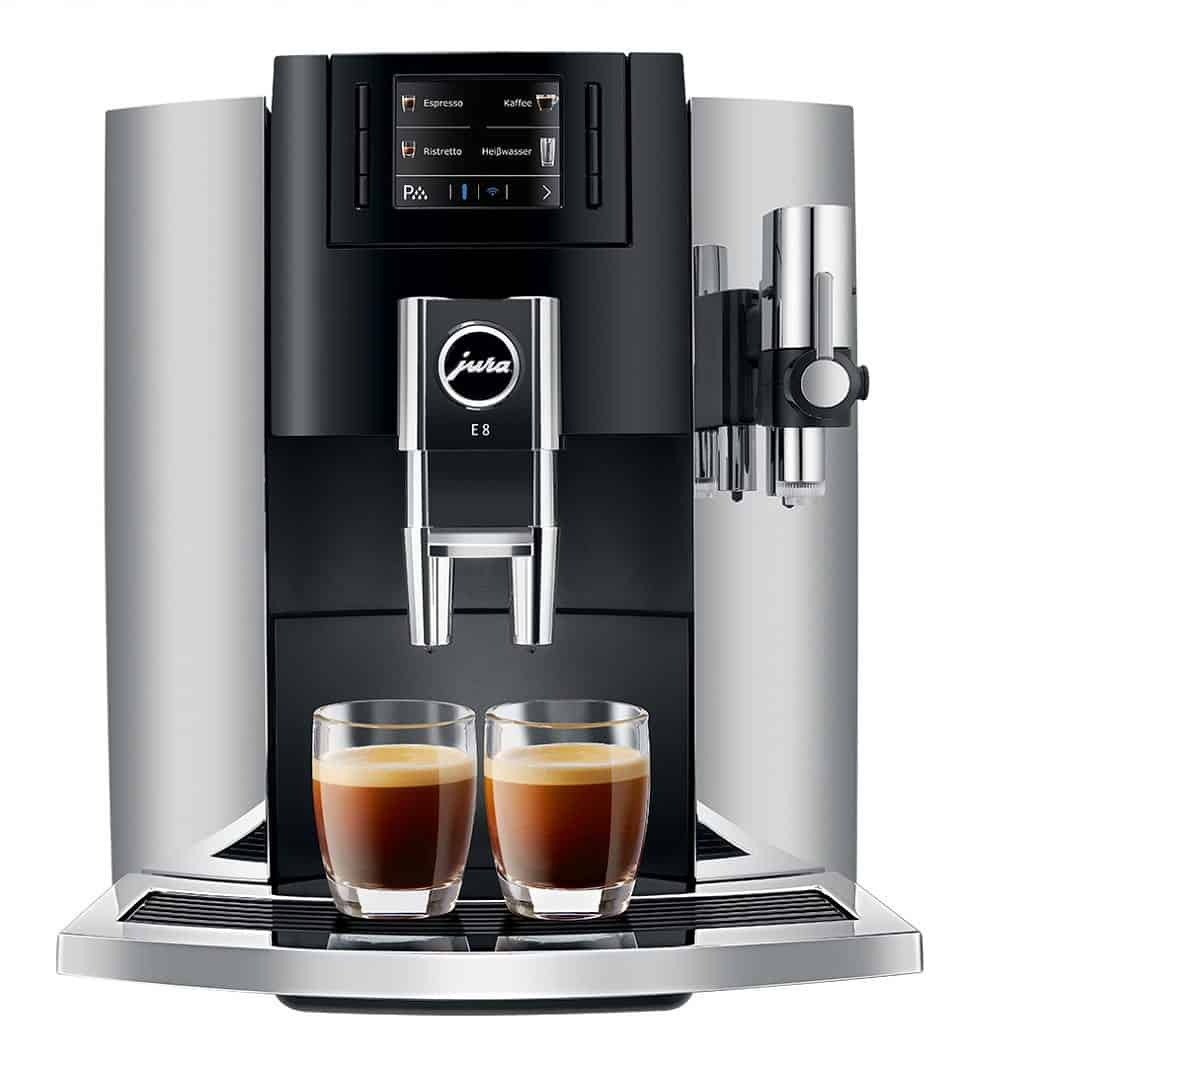 jura e8 espresso machine